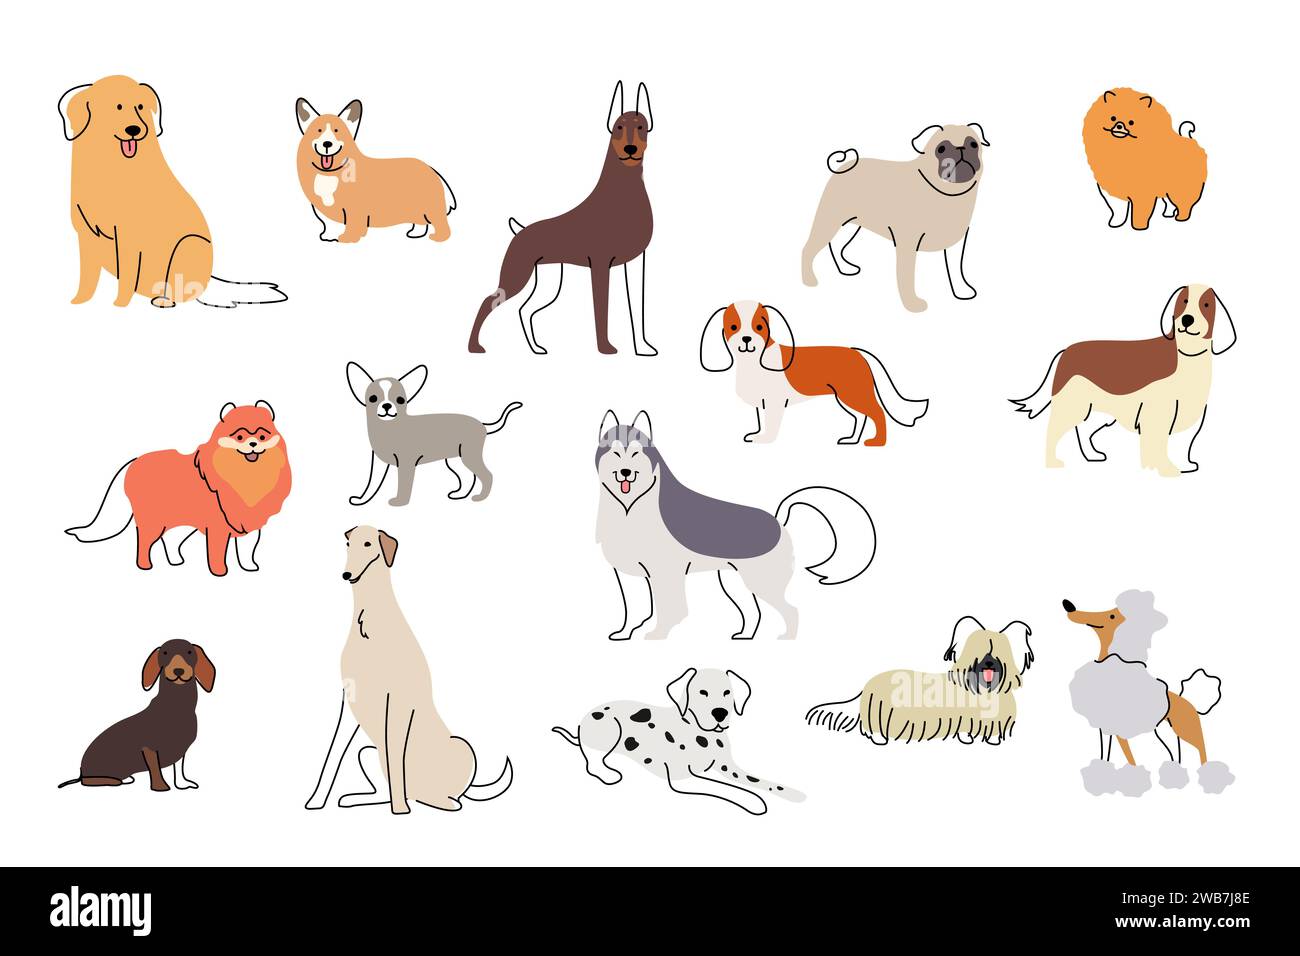 Un'illustrazione vettoriale di diverse icone di cute Dogs Illustrazione Vettoriale